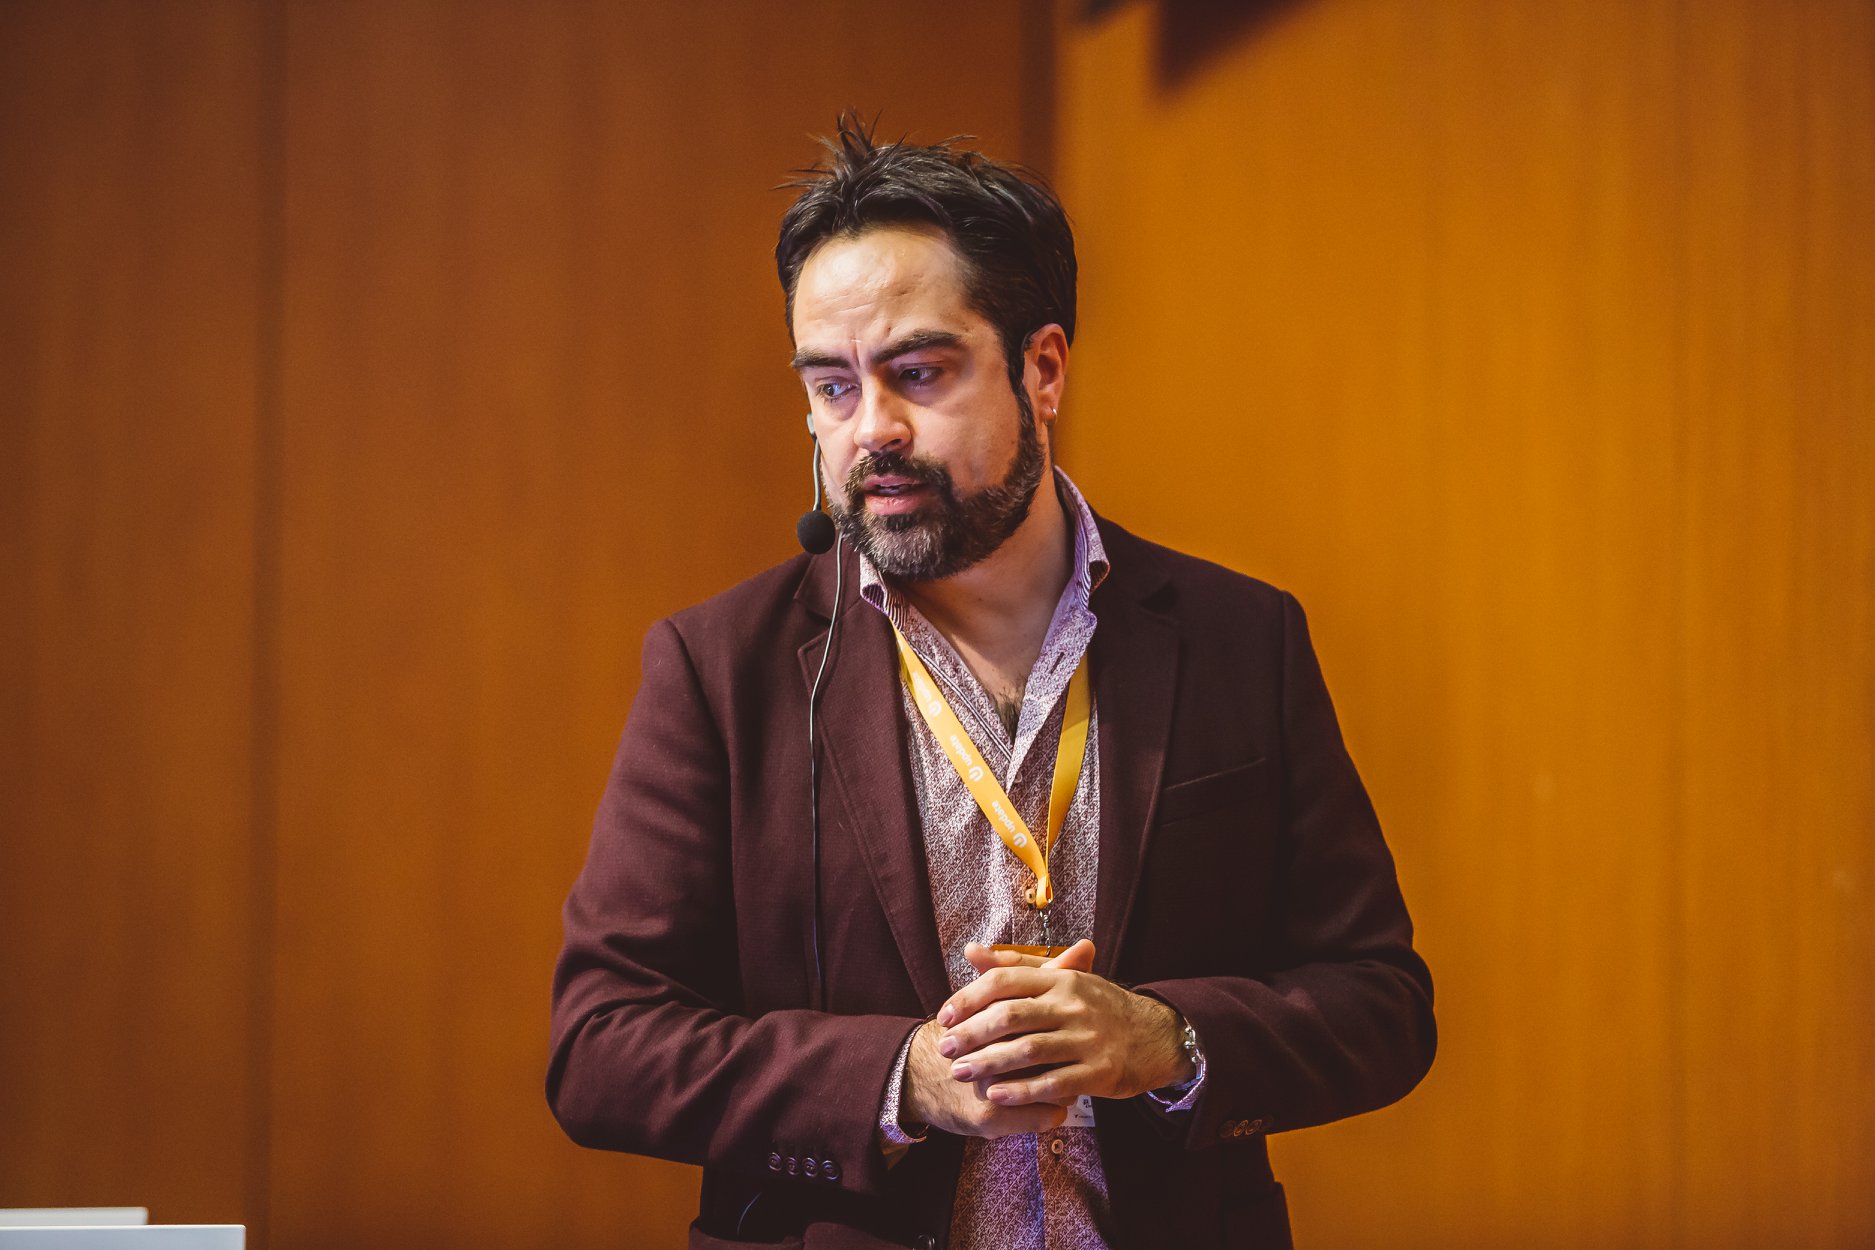 Rodrigo Díaz Concha en Update Conference 2018 - Praga, República Checa